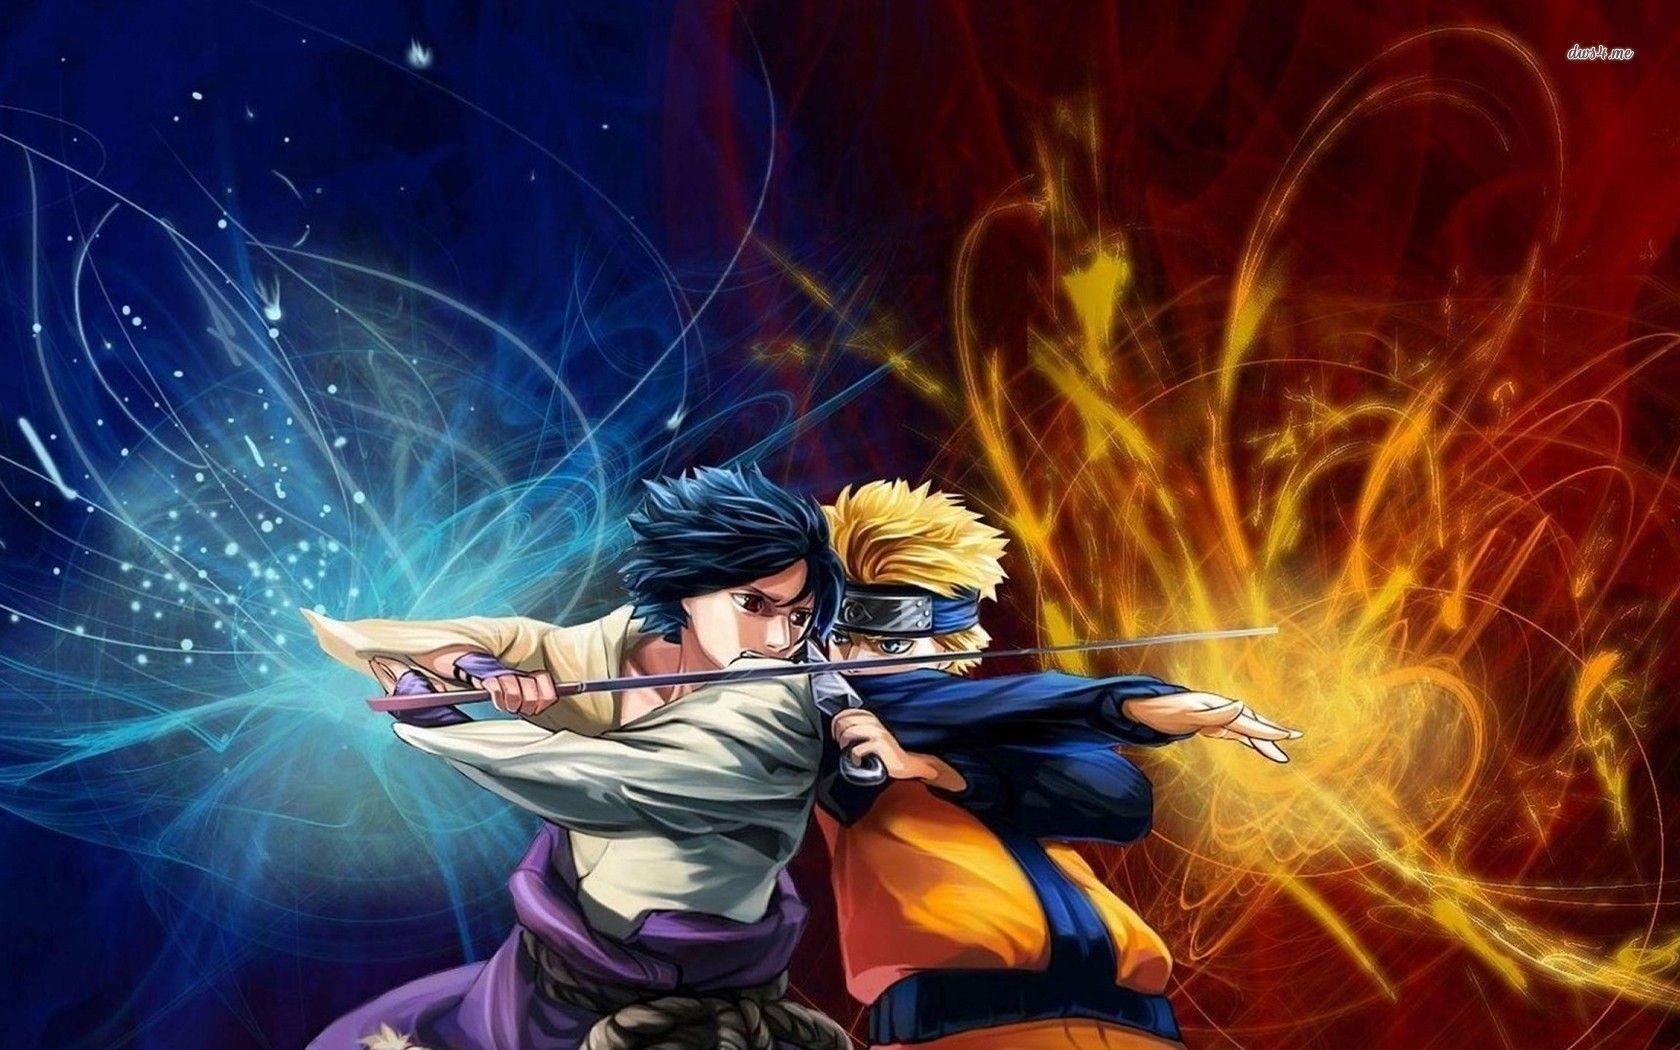 8141) Naruto Shippuden Sasuke Beautiful Wallpaper